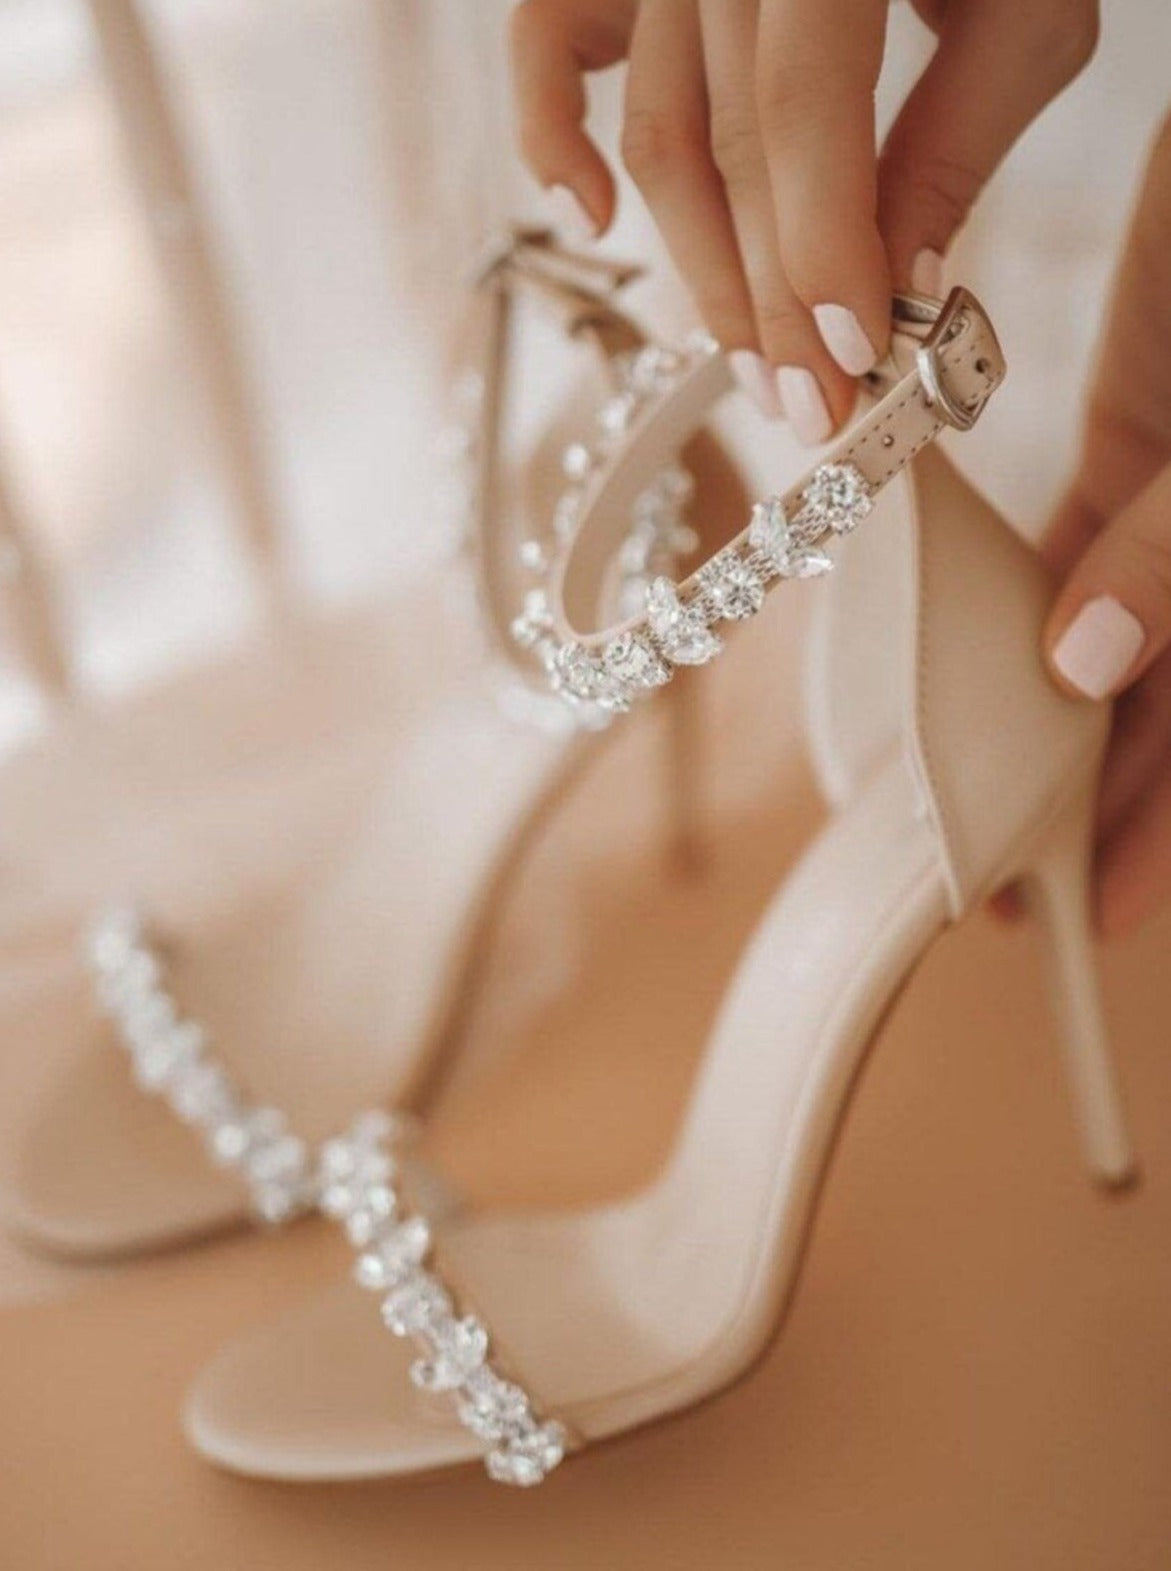 Julia diamante sandals